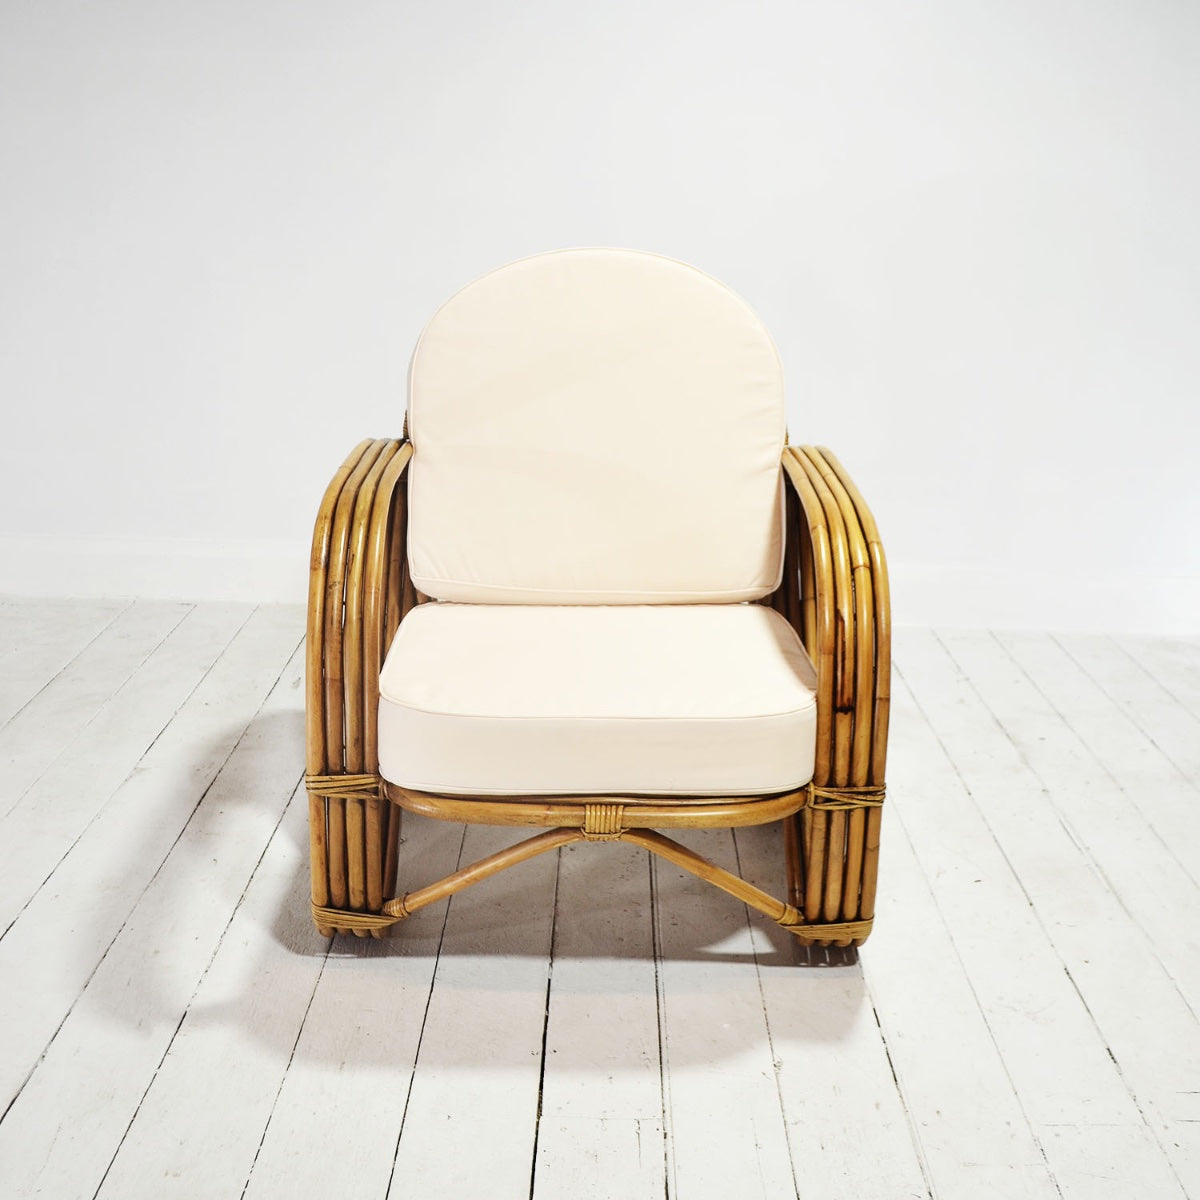 Caramel Pretzel Rattan Arm Chair - Cream Cushion